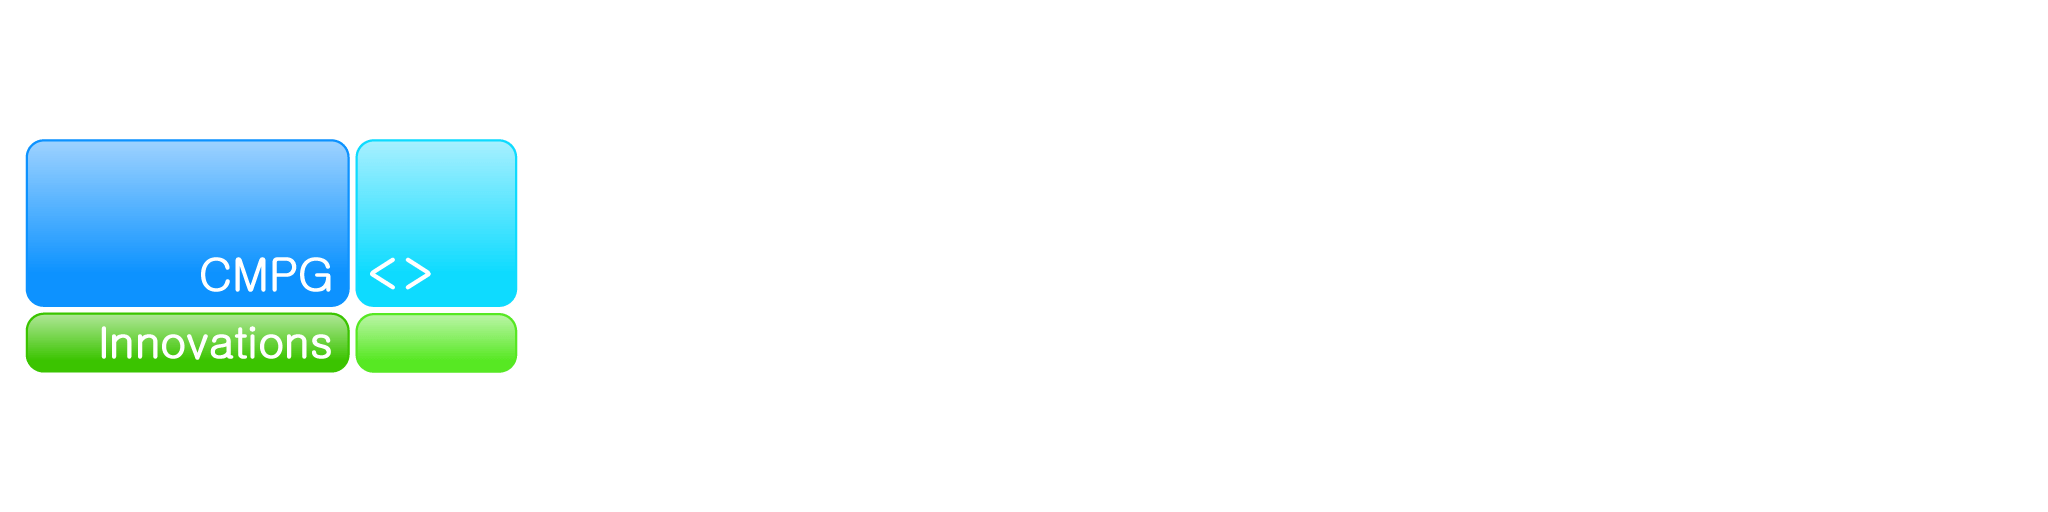 CMPG Innovations